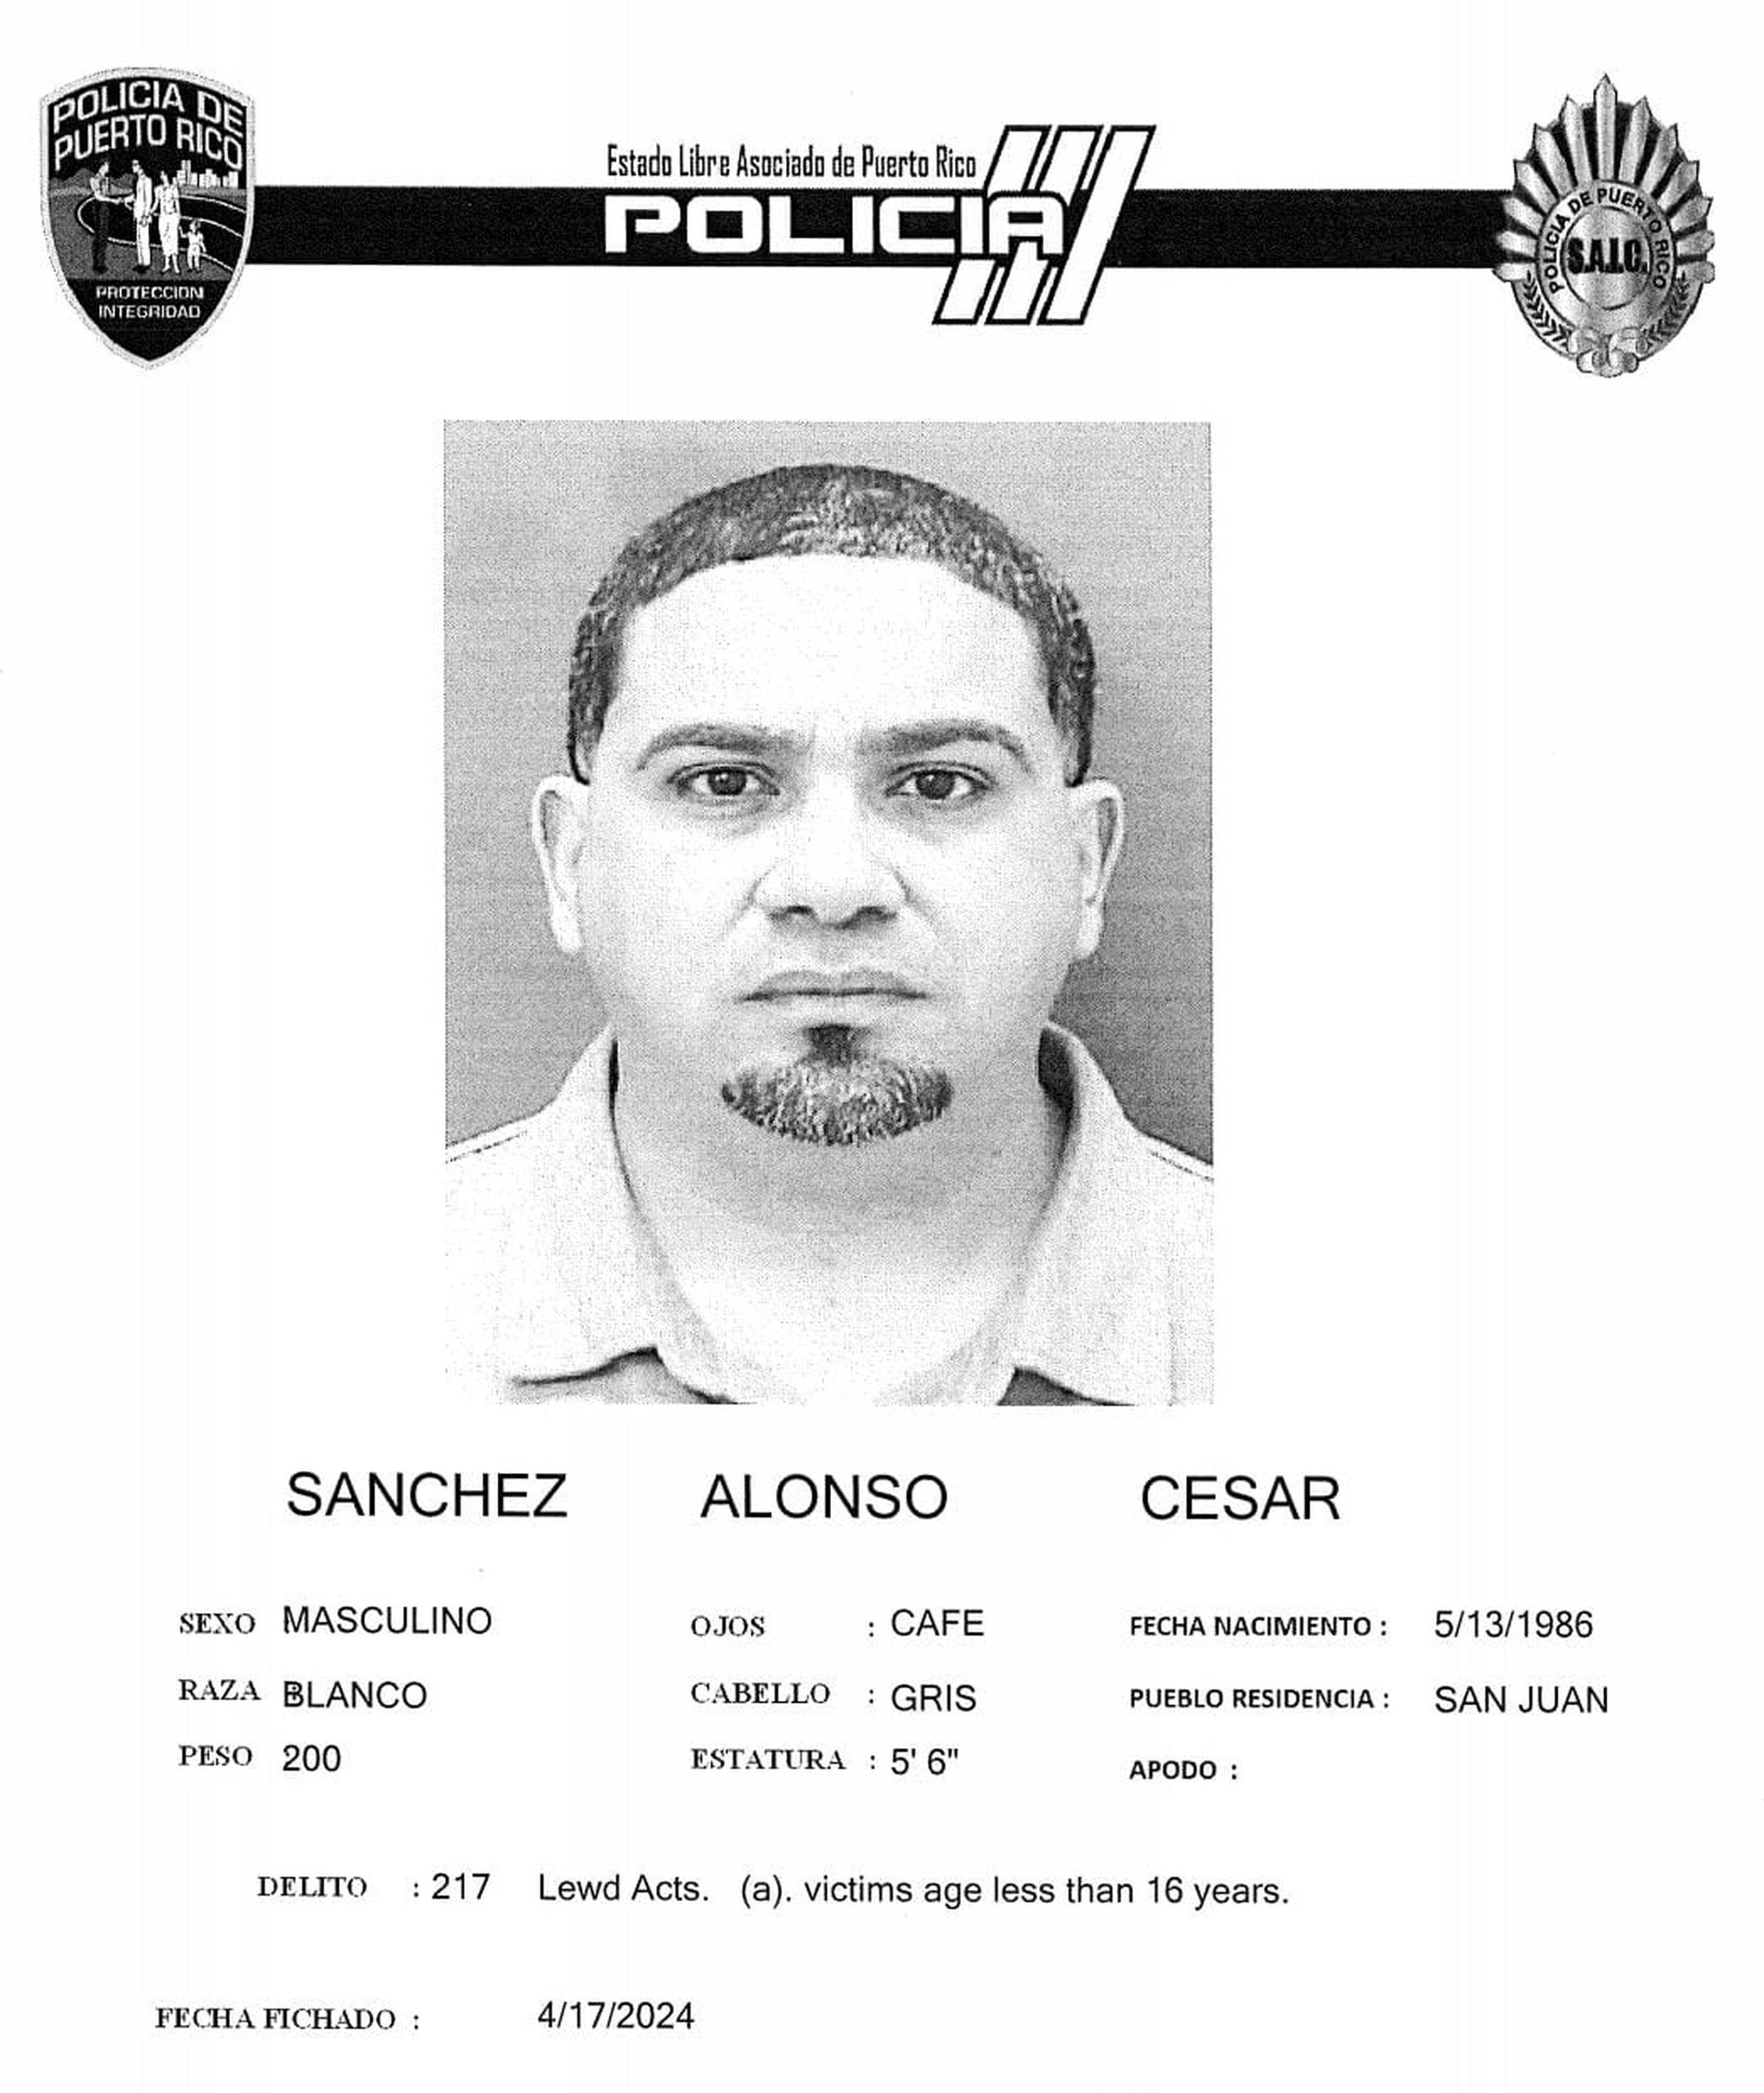 César Sánchez Alonso enfrenta cargos por maltrato de menores, actos lascivos y agresión sexual.